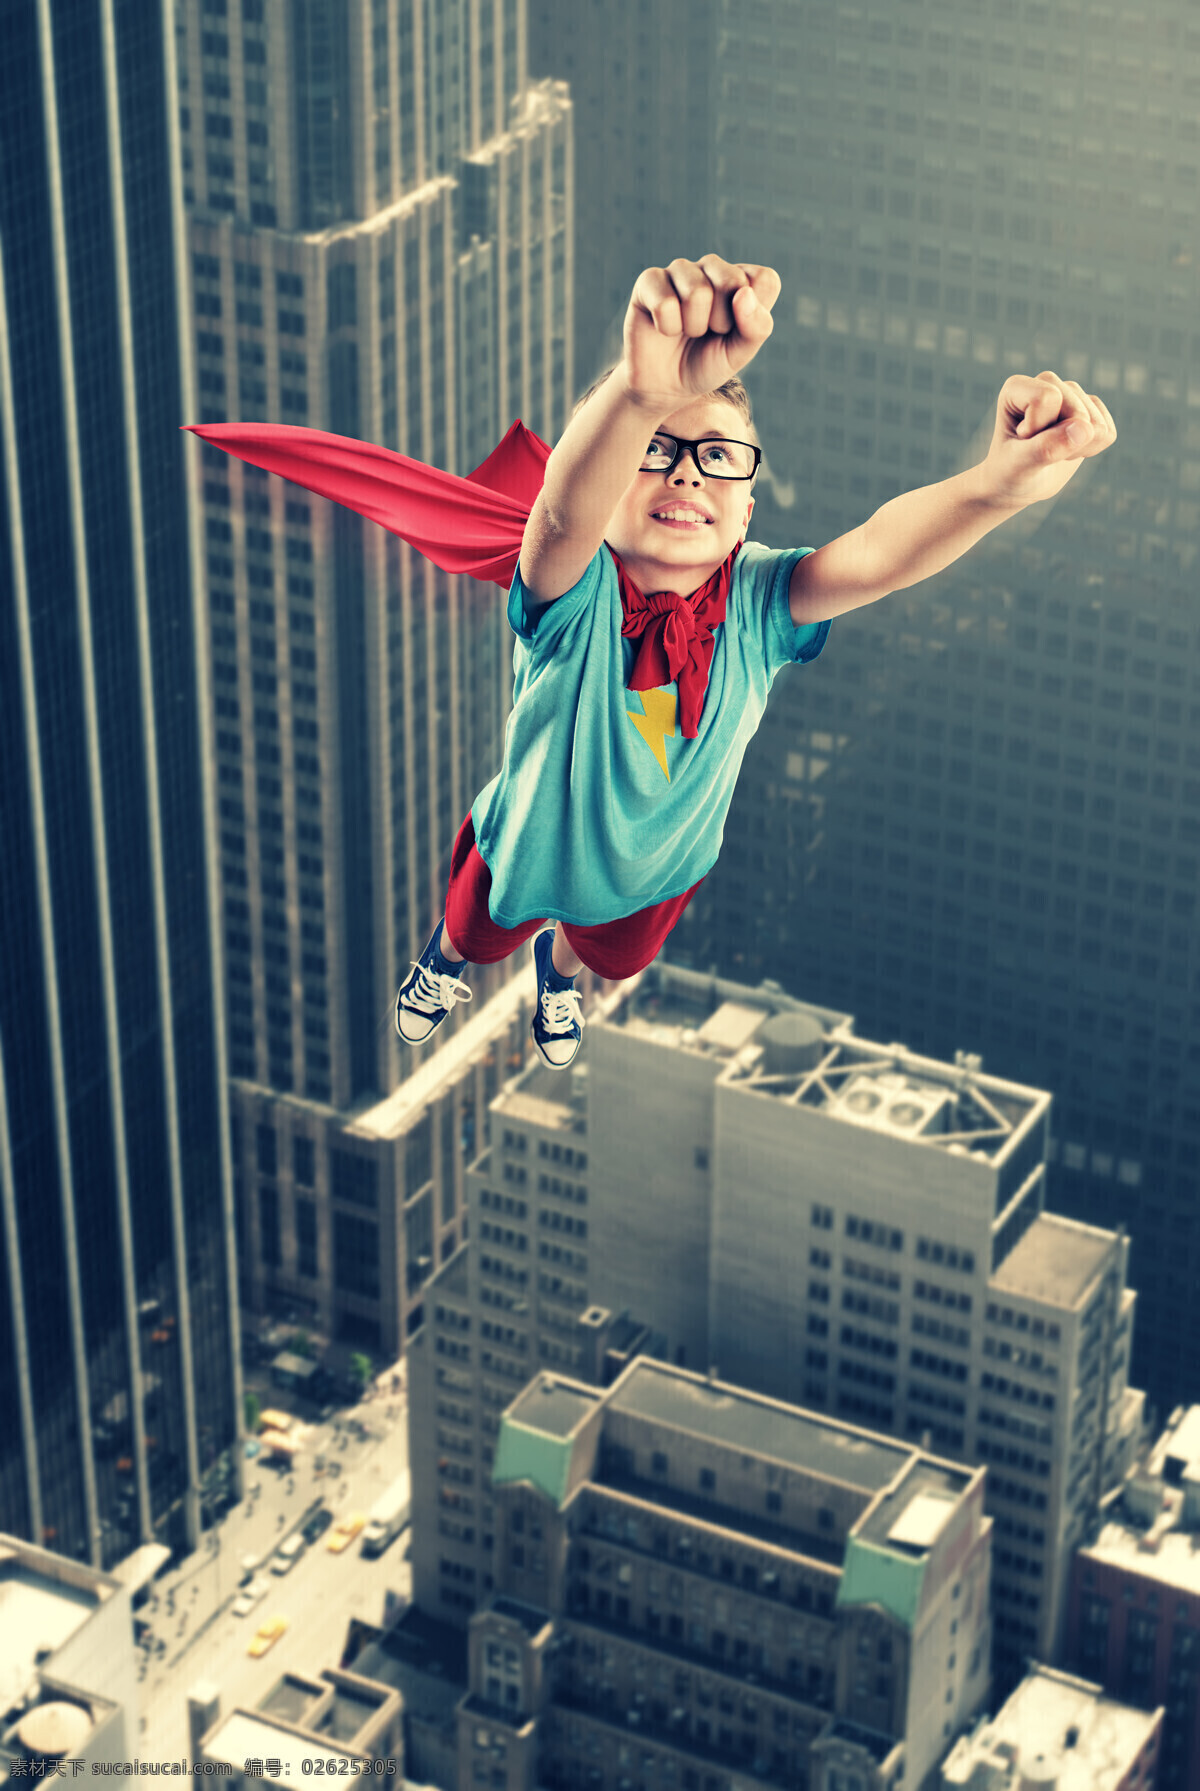 飞翔 超人 儿童 飞翔的超人 高楼大厦 戴眼镜的超人 小英雄 超级英雄 外国男孩 小男孩 儿童超人 披风 儿童图片 人物图片